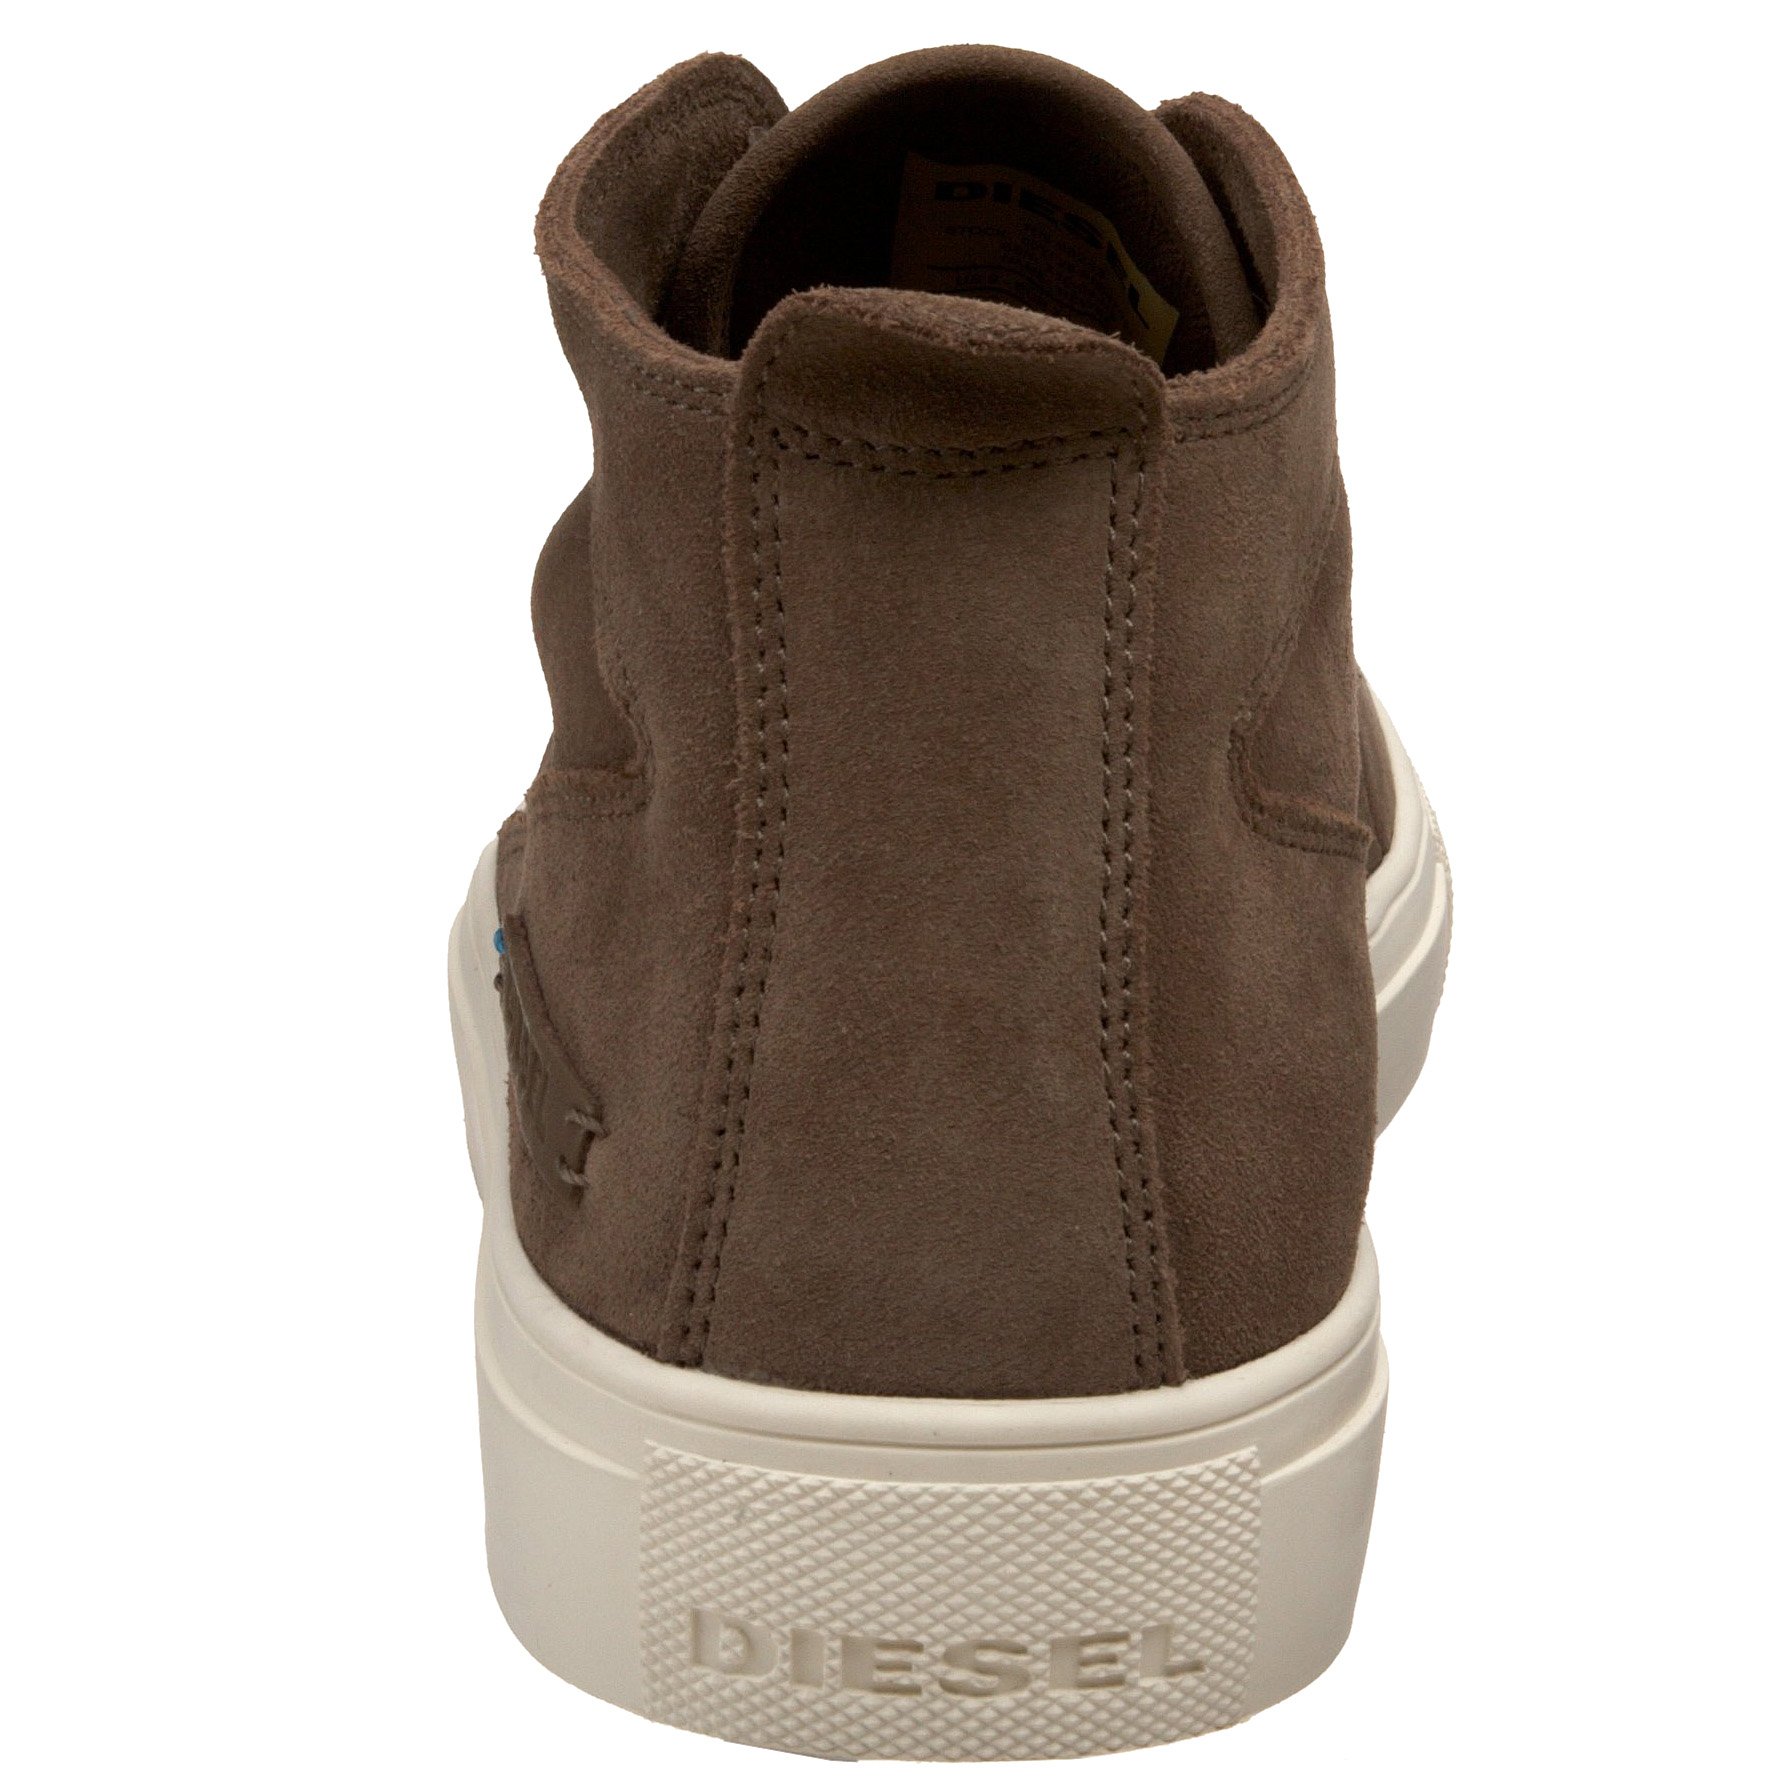 Diesel Men's Radically Modern-Newbie Sneaker